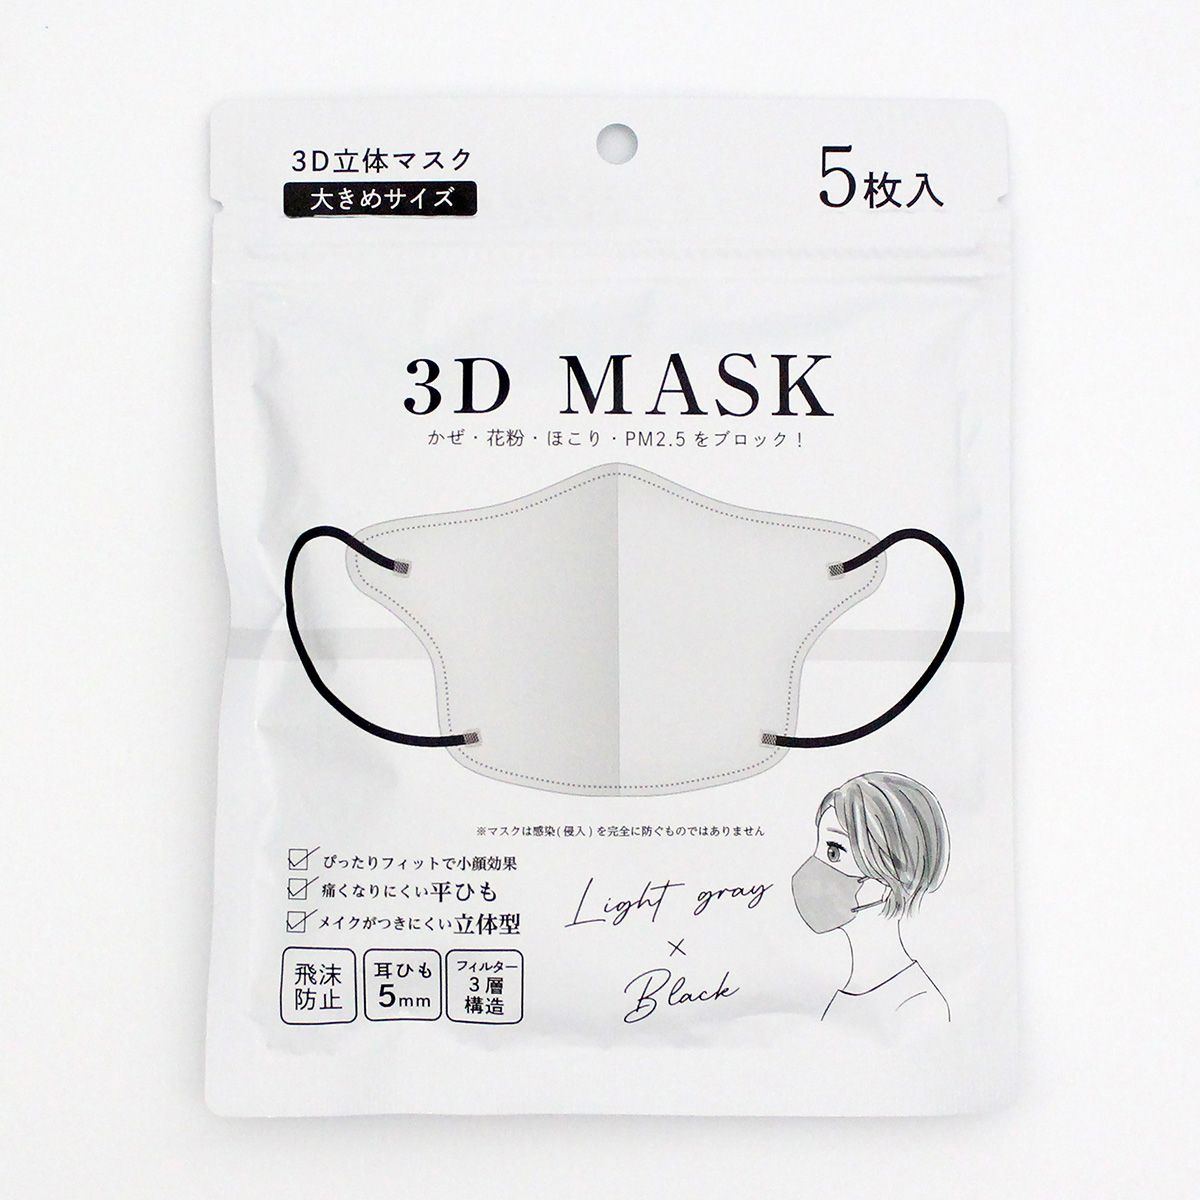 【在庫限り】3D立体マスク 不織布マスク ライトグレーxブラック 大きめ 5枚入り 347005